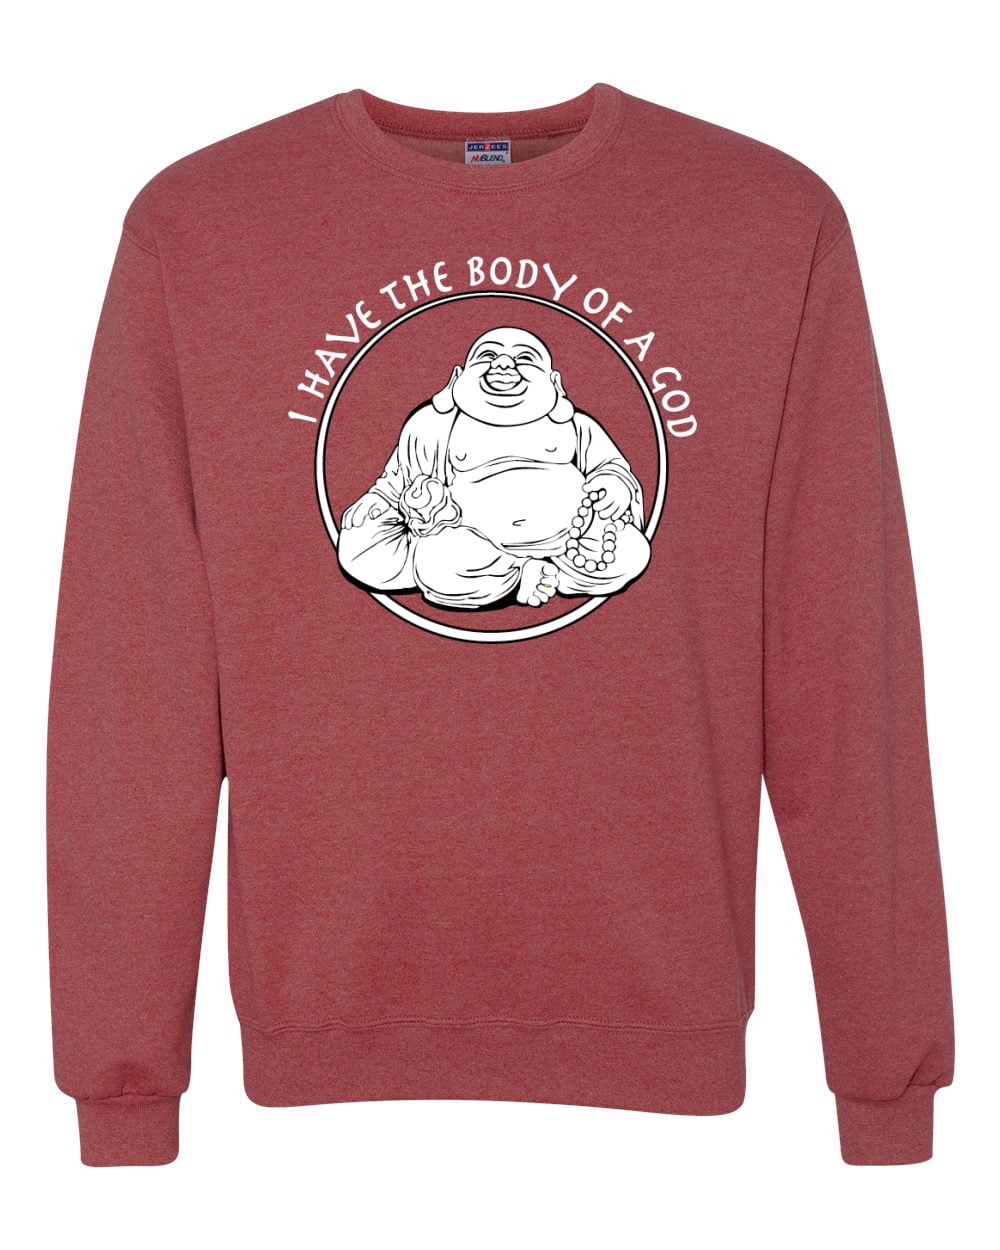 Vintage Style Retro Sleeping Buddha Gift Sweatshirt